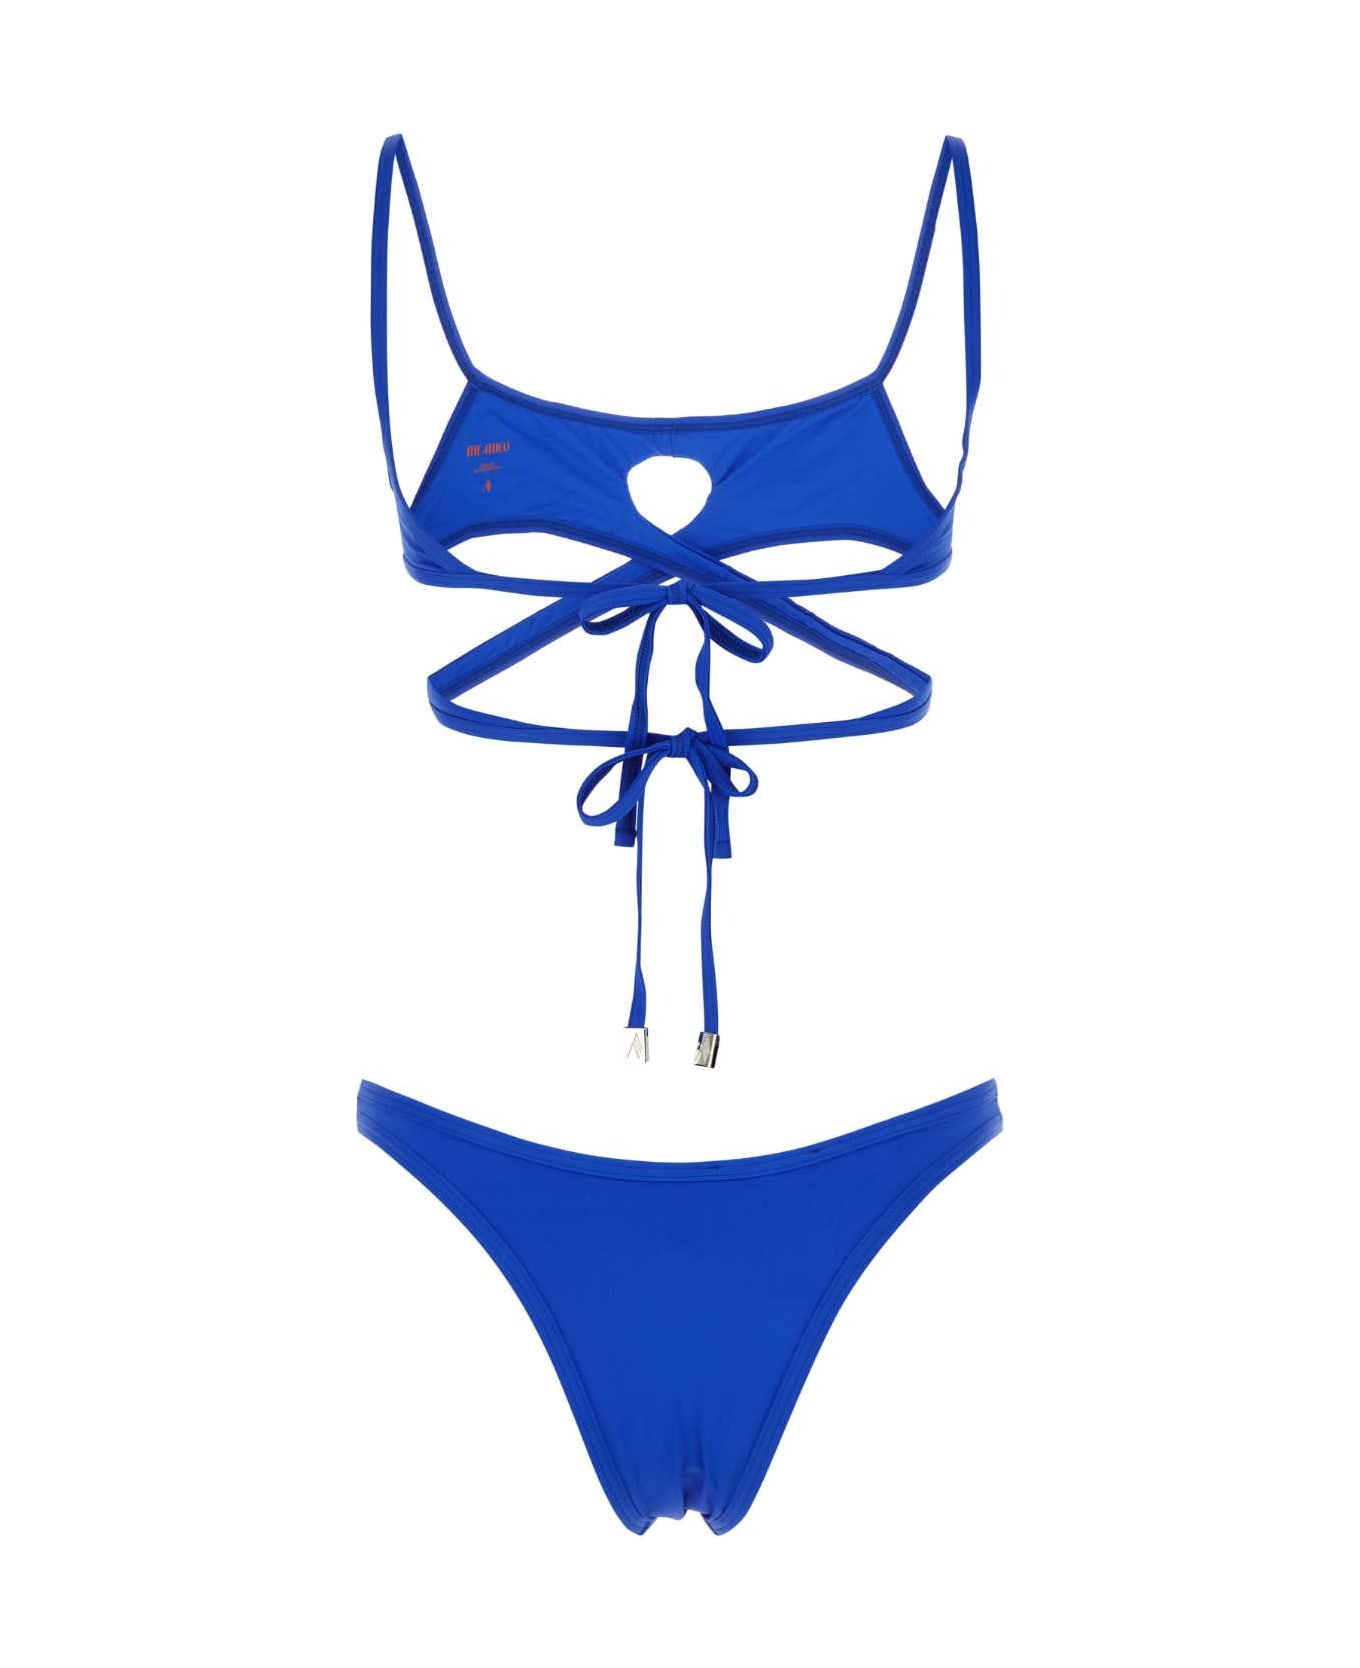 The Attico Electric Blue Stretch Nylon Bikini - 015